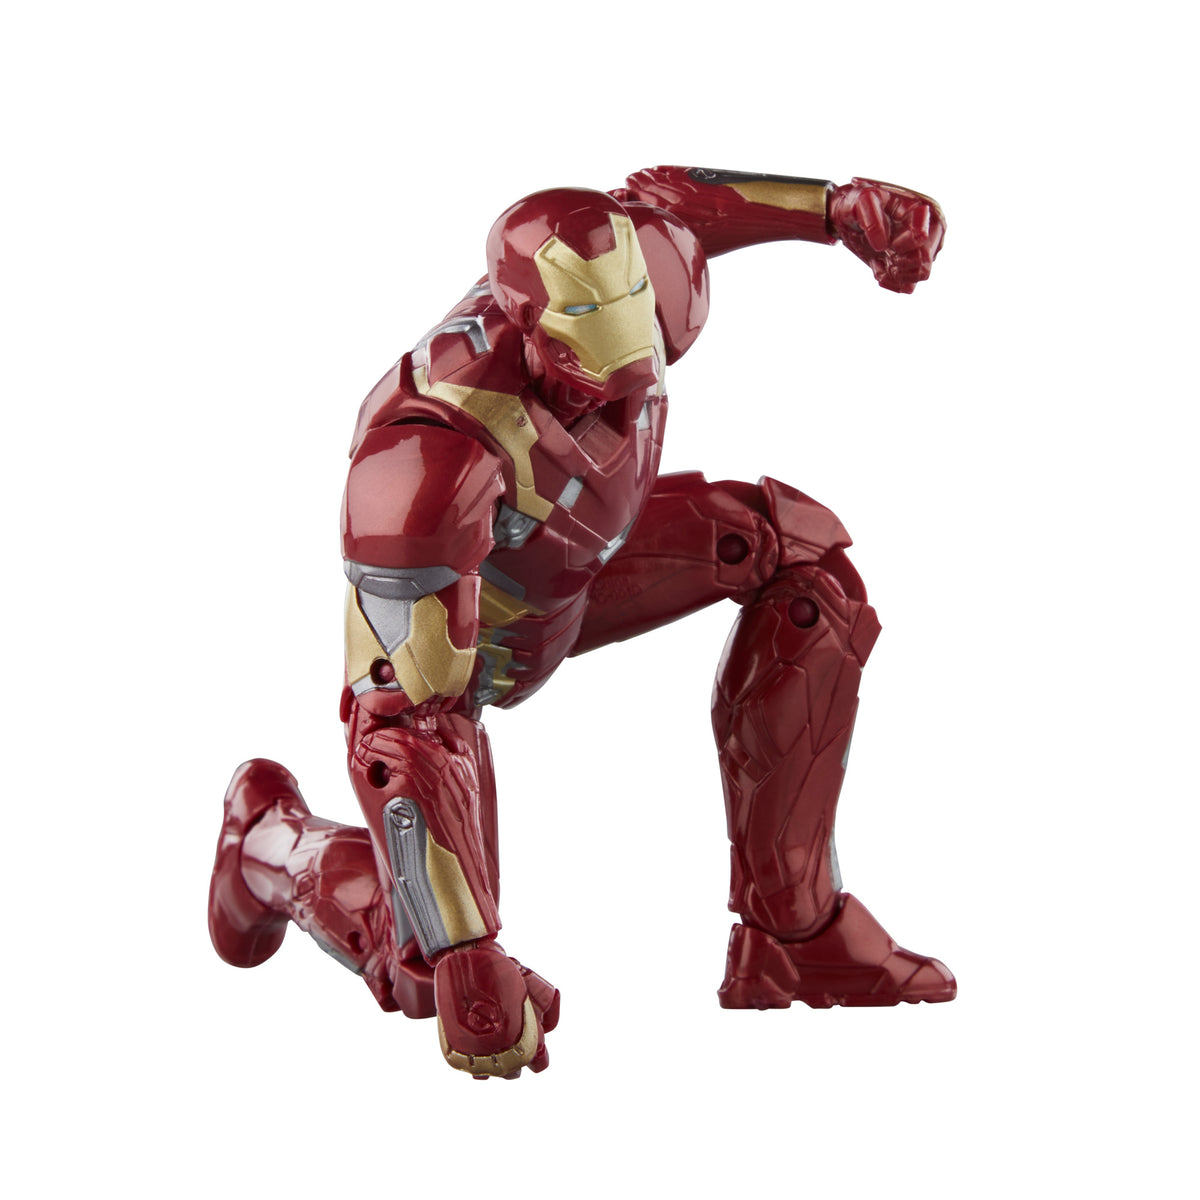 Iron Man - Mark 46 Deluxe Action Figure